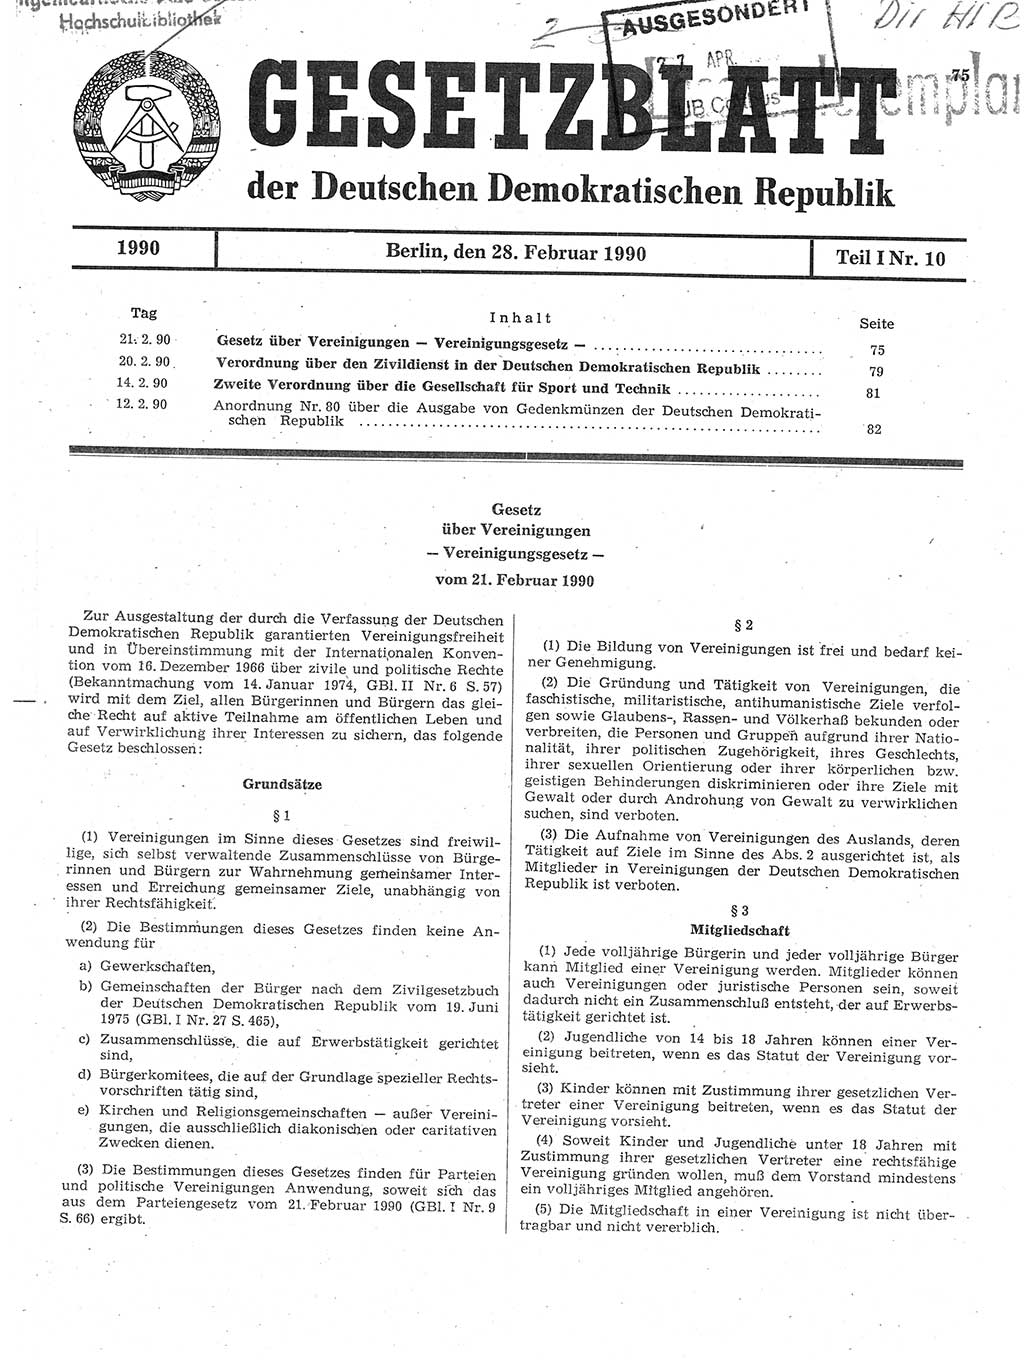 Gesetzblatt (GBl.) der Deutschen Demokratischen Republik (DDR) Teil Ⅰ 1990, Seite 75 (GBl. DDR Ⅰ 1990, S. 75)